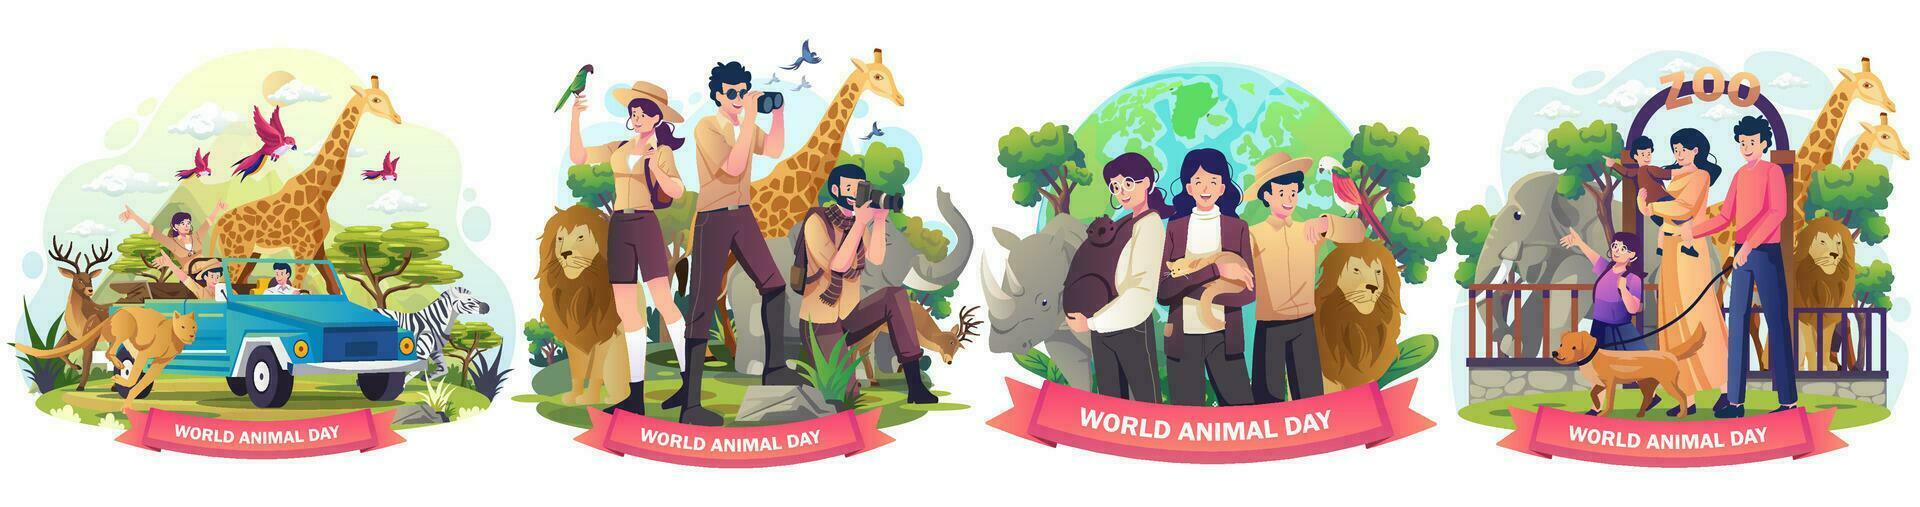 ensemble de monde animal jour, faune jour, animaux sur le planète, animaux autour le monde illustration vecteur